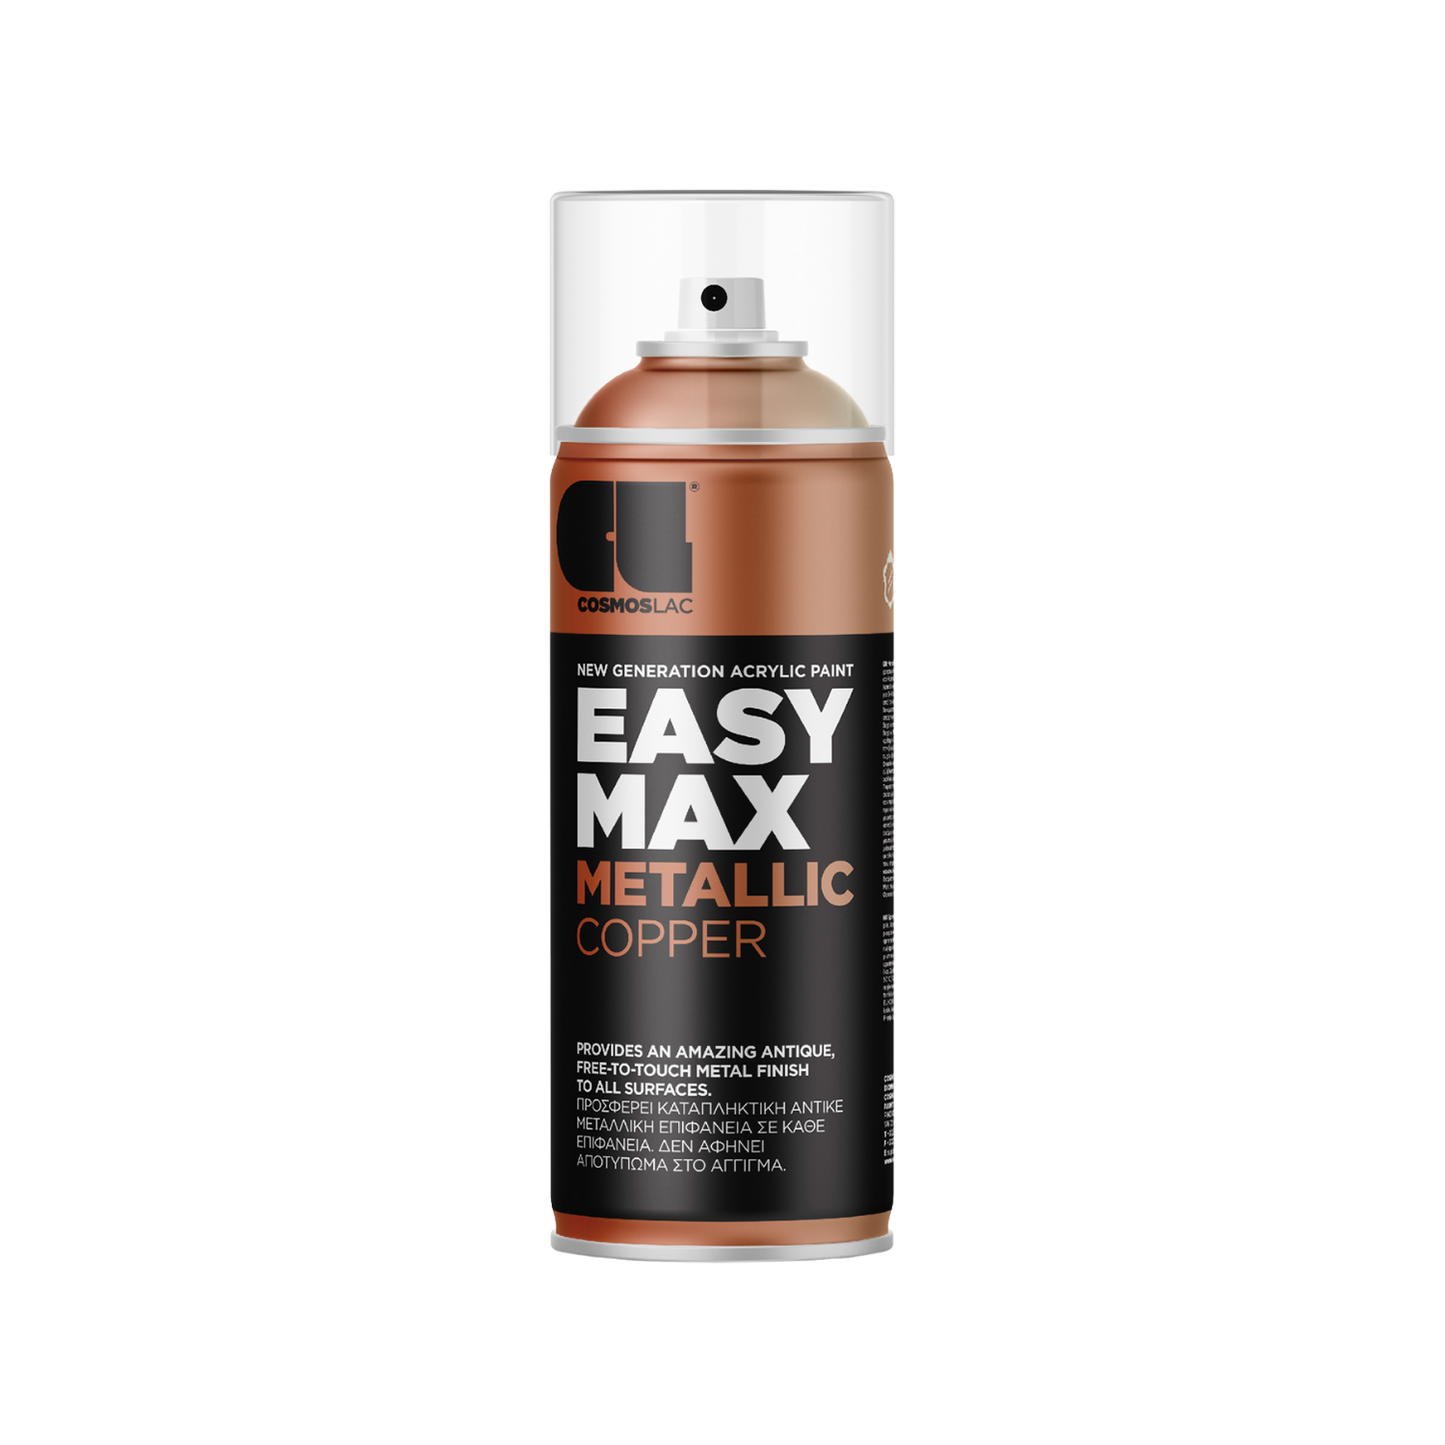 COSMOS LAC EASY MAX Premium Acryllack Sprühlack zum Upcycling und DIY Projekten von Möbeln und Dekoobjekten Schwarze Sprühflasche mit Metallic Kupfer